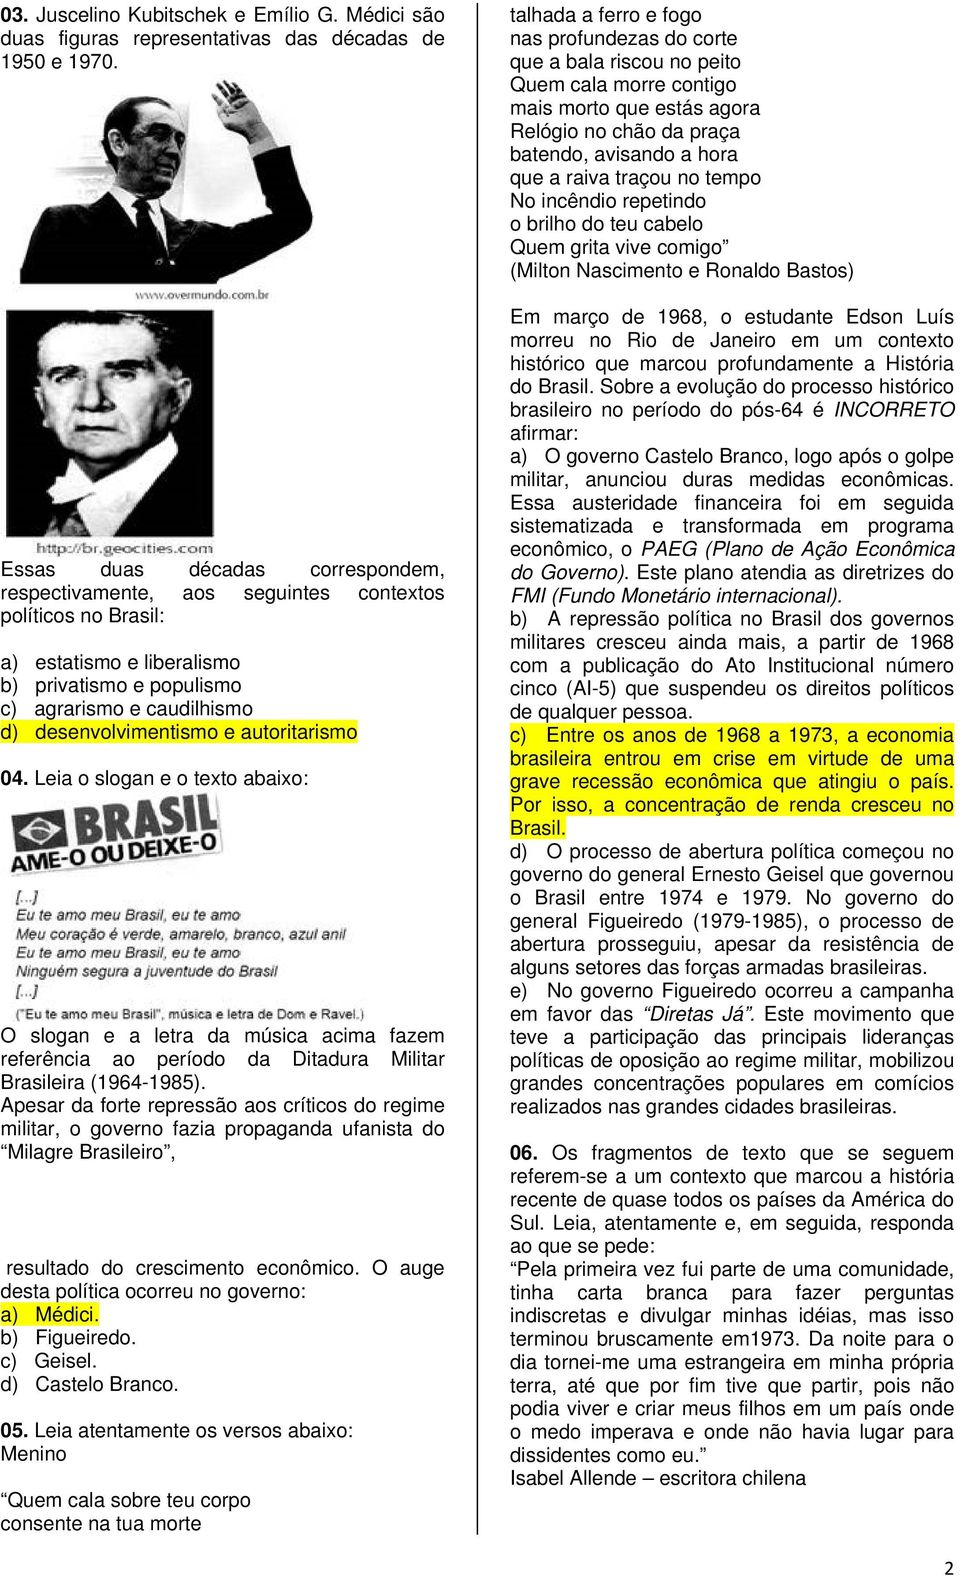 autoritarismo 04. Leia o slogan e o texto abaixo: O slogan e a letra da música acima fazem referência ao período da Ditadura Militar Brasileira (1964-1985).